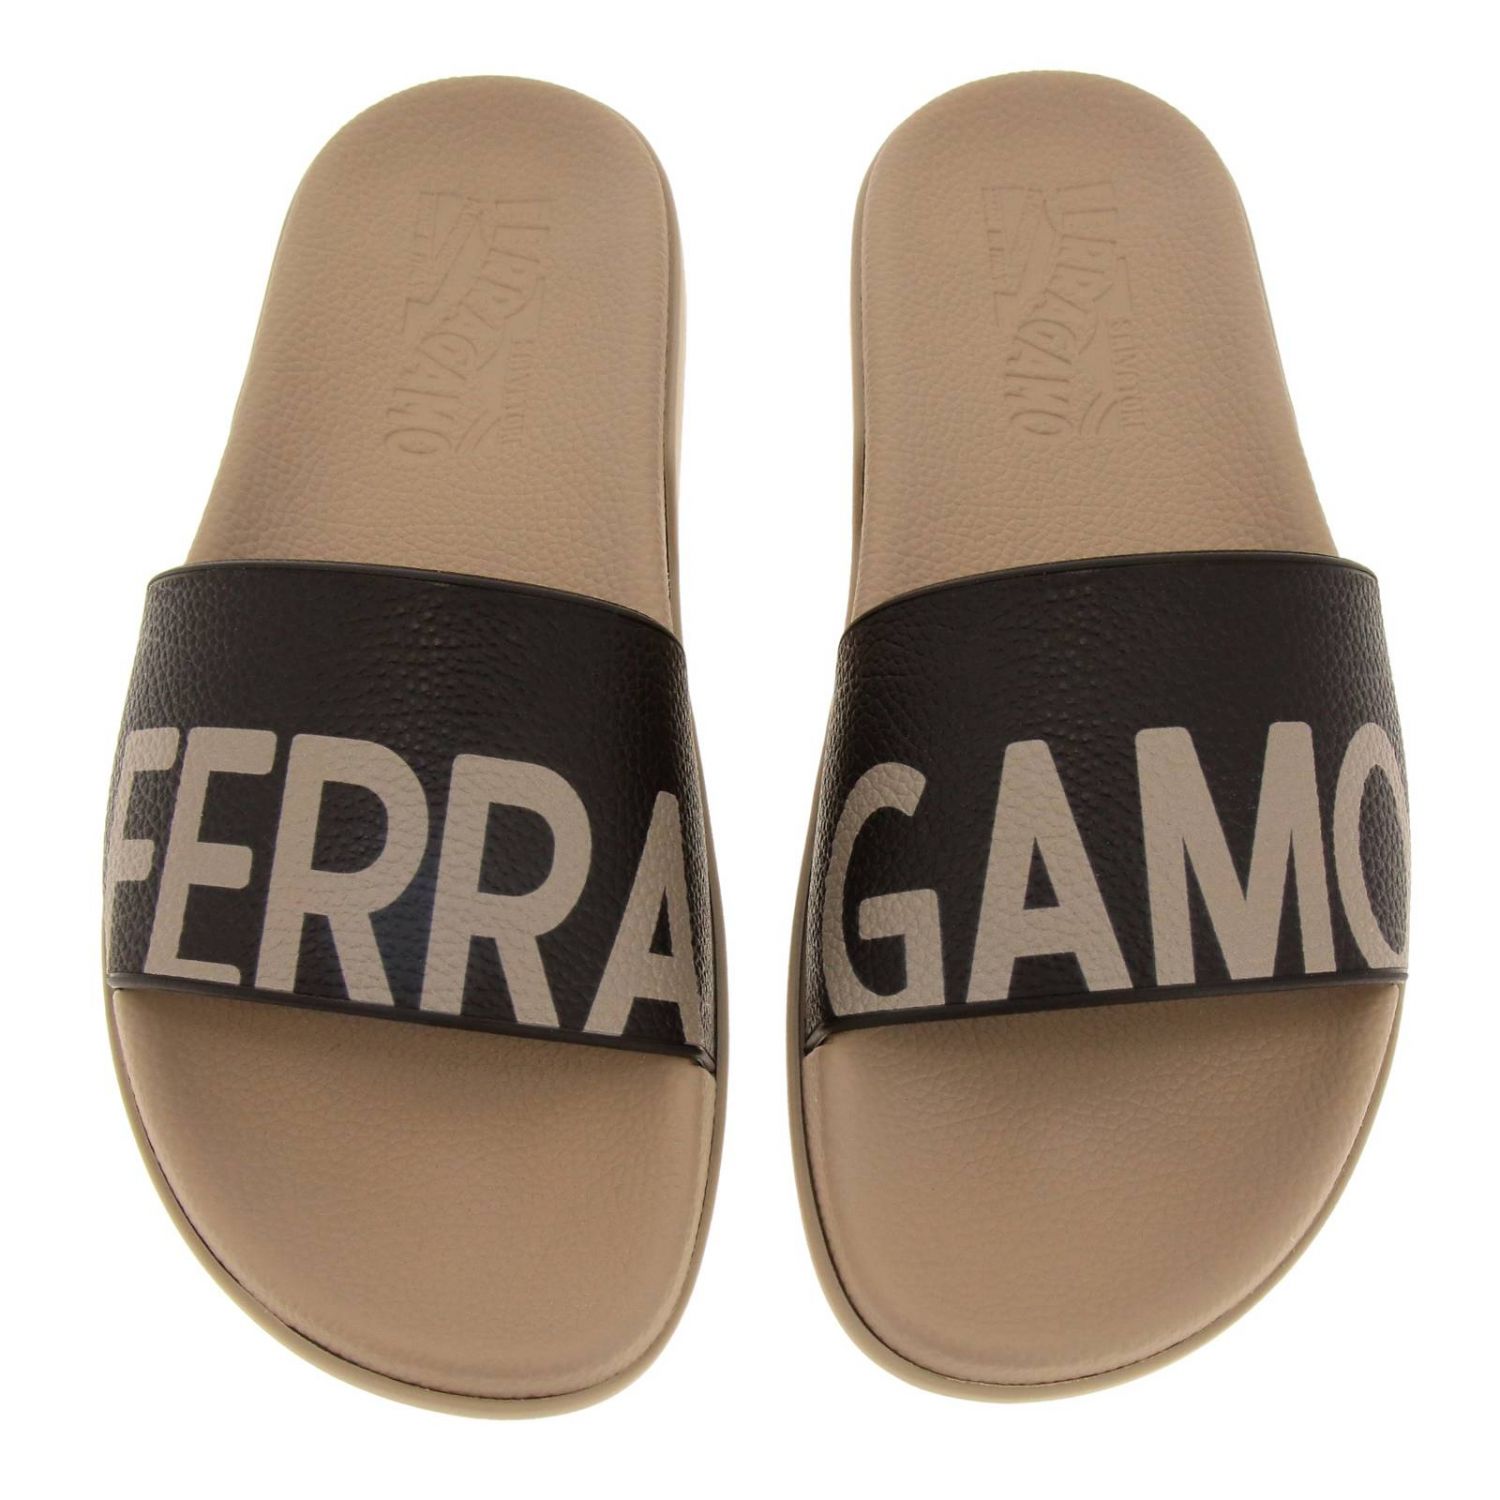 Salvatore Ferragamo Outlet: Shoes men - Sand | Sandals Salvatore ...